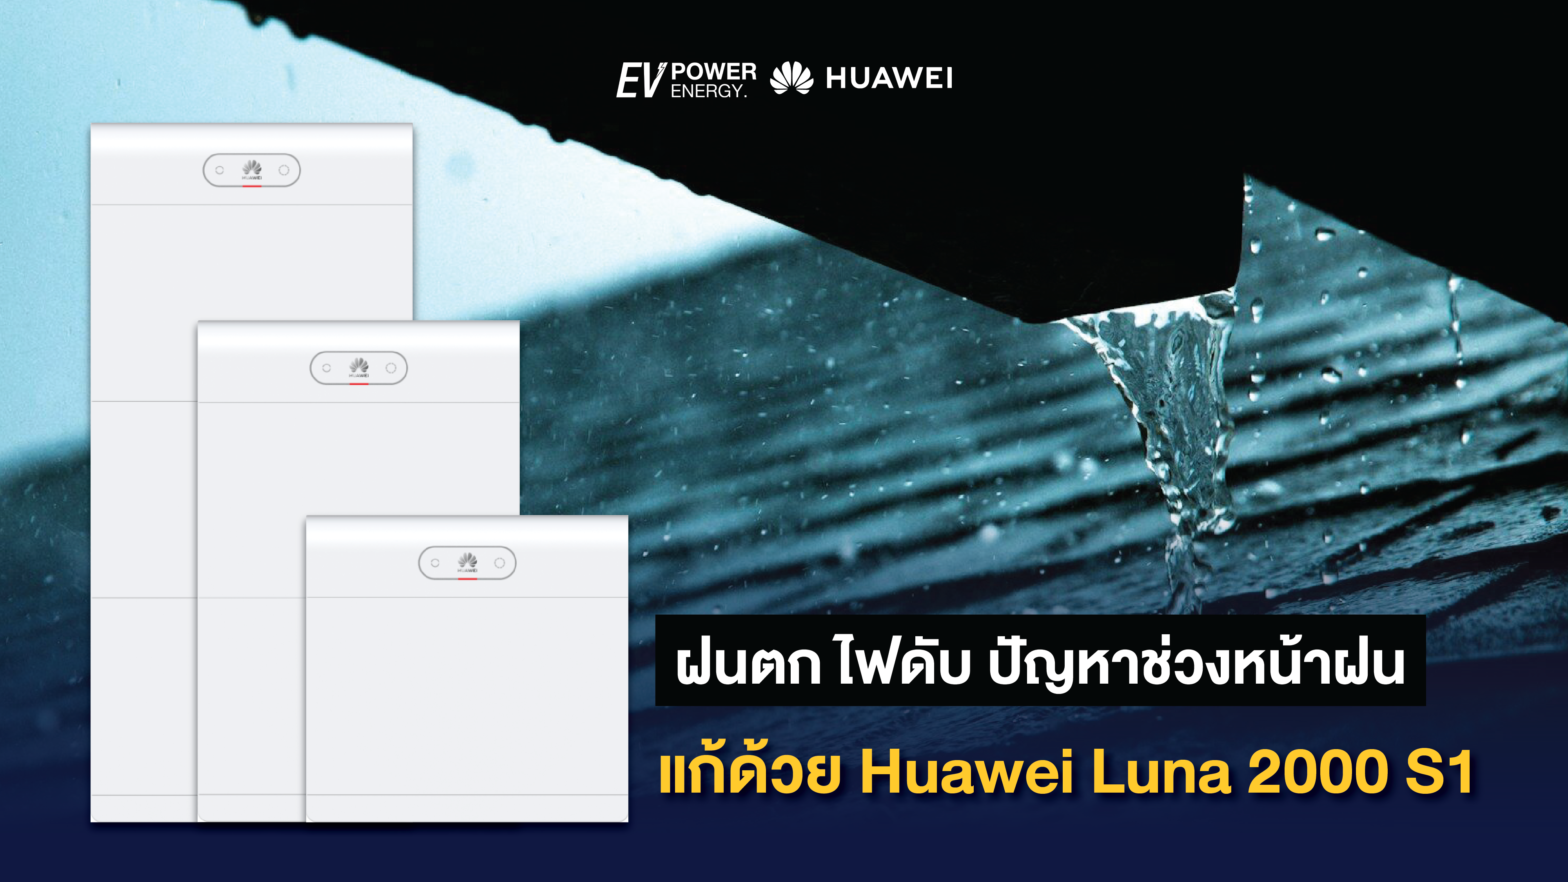 ฝนตก ไฟดับ ปัญหาช่วงหน้าฝน แก้ด้วย Huawei Luna 2000 S1-03